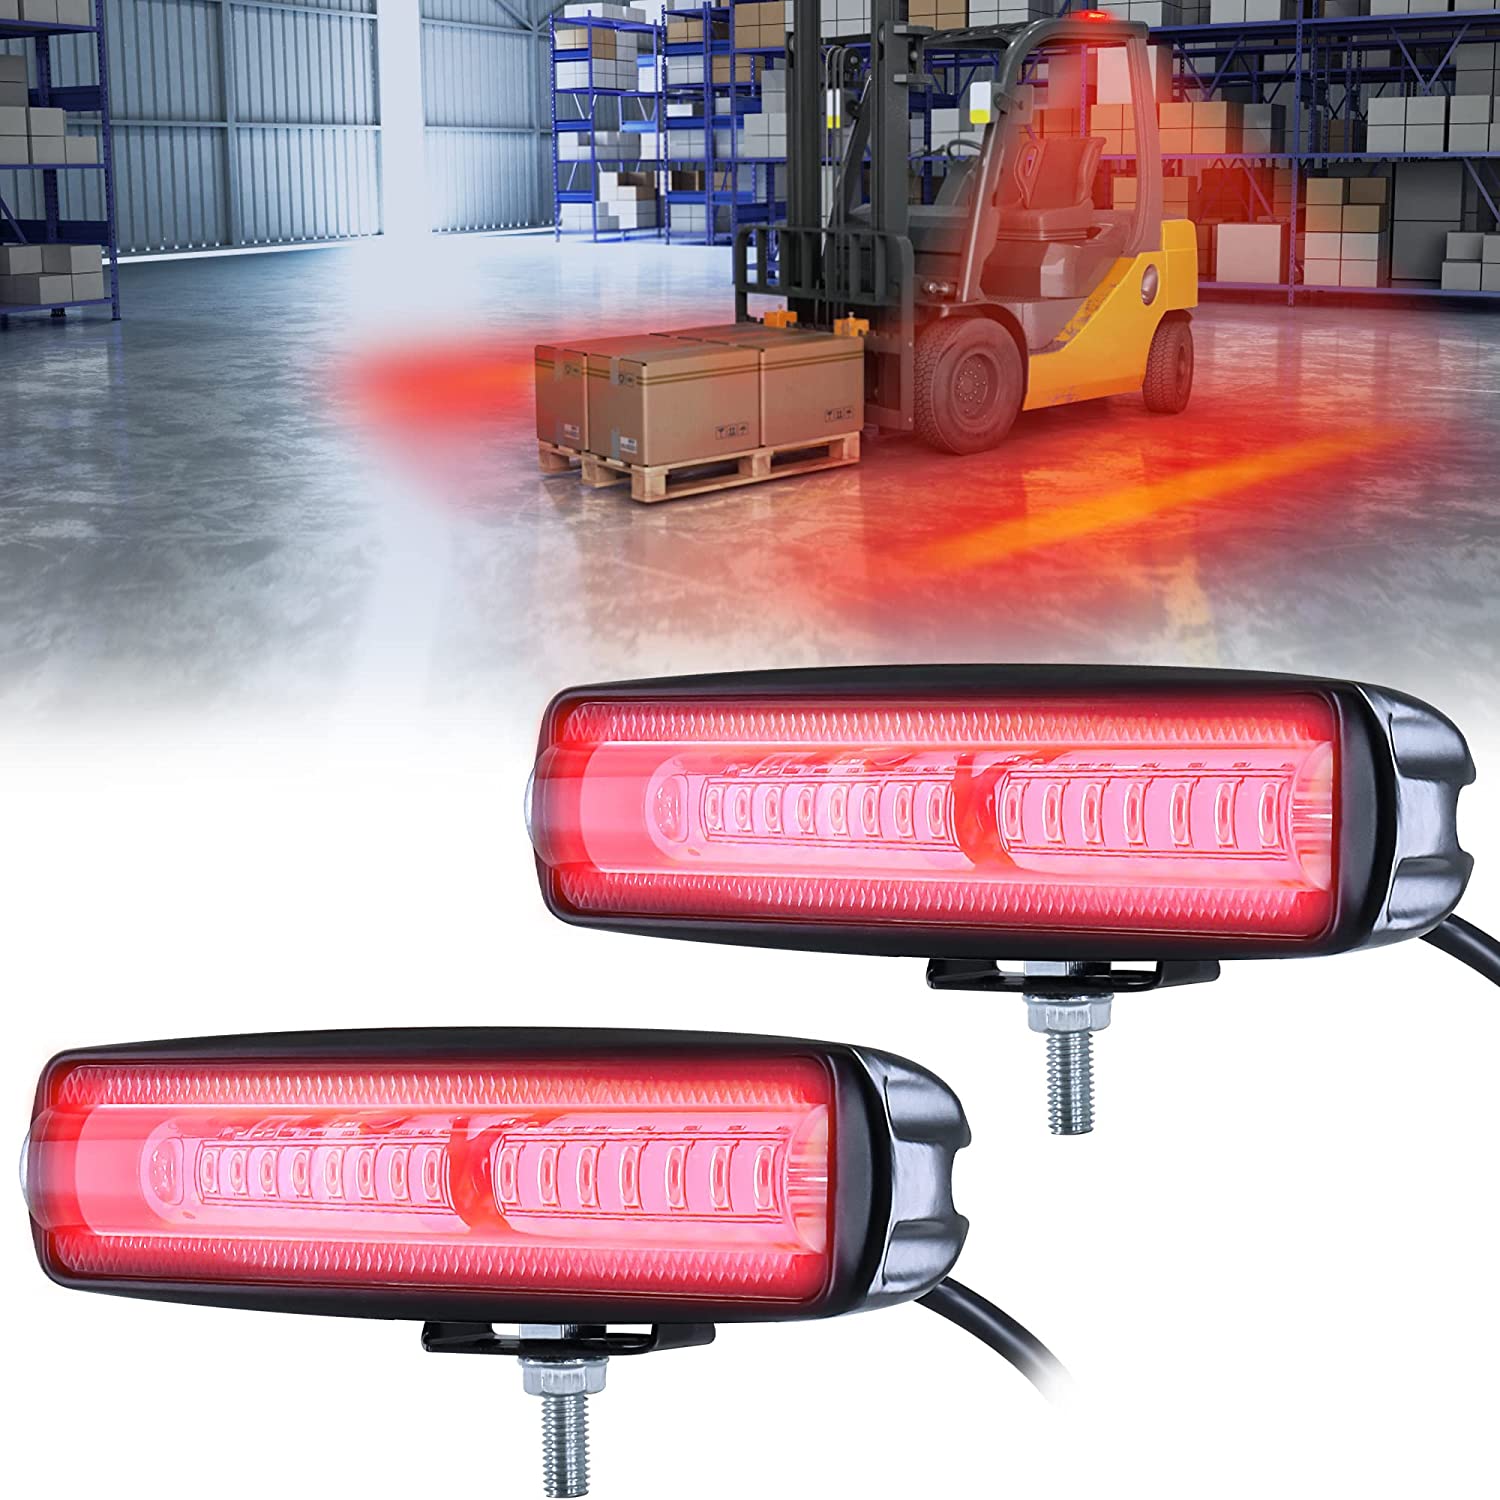 eTzone Upgrade Red LED Forklift Light 2 Pack Warehouse Warning Light Truck Safety Light Zone Warning Lights (30W, DC 12-80V)